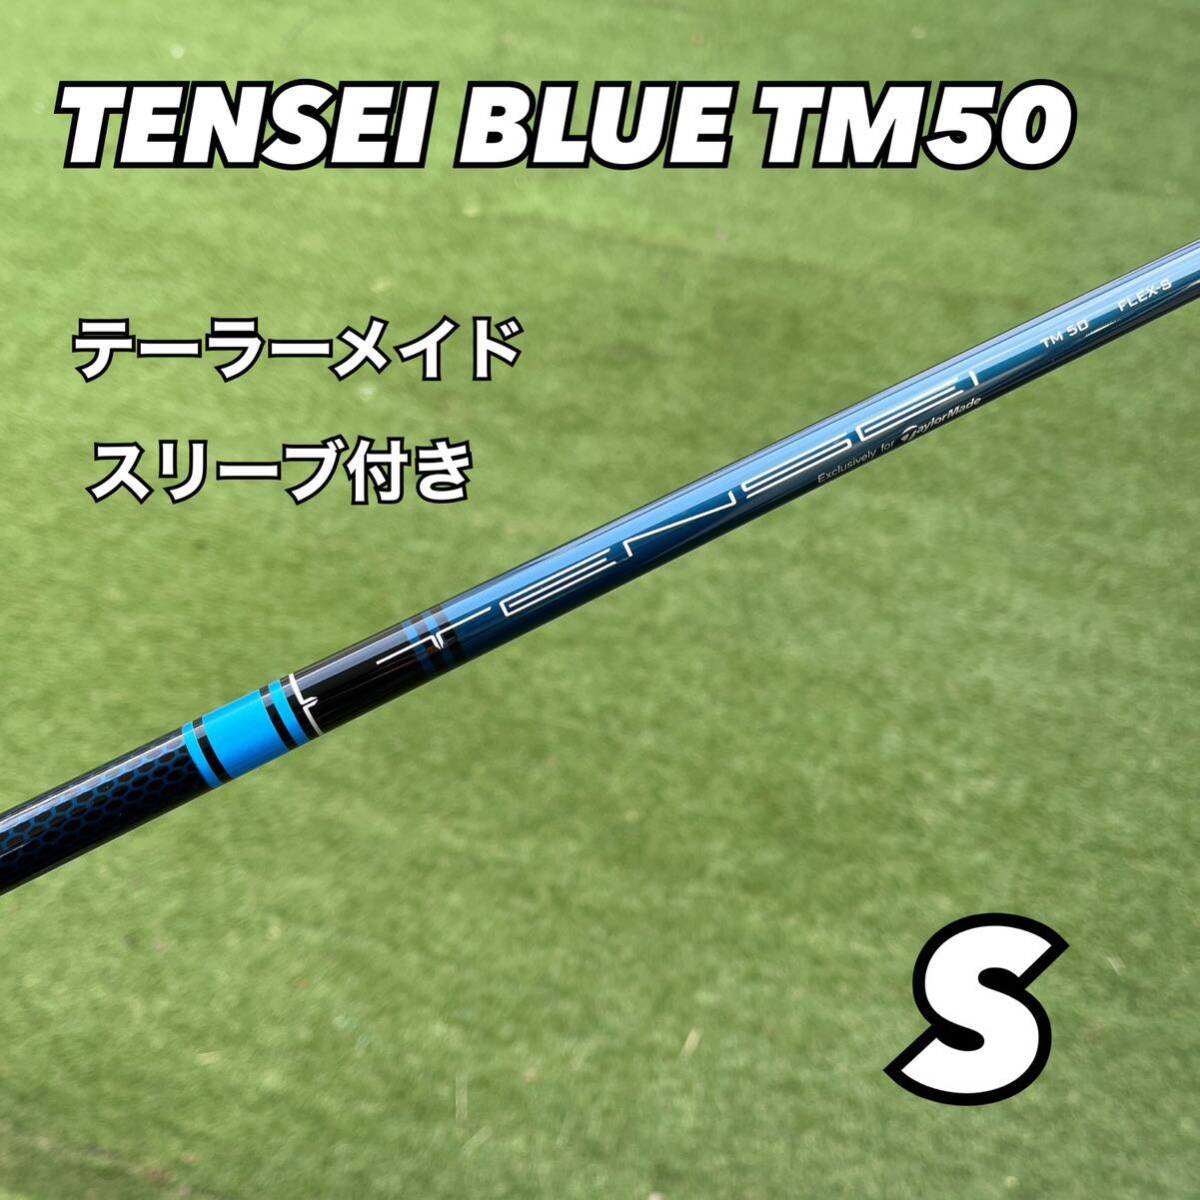 テーラーメイドスリーブ テンセイ ブルー TM50 ドライバー用 - クラブ